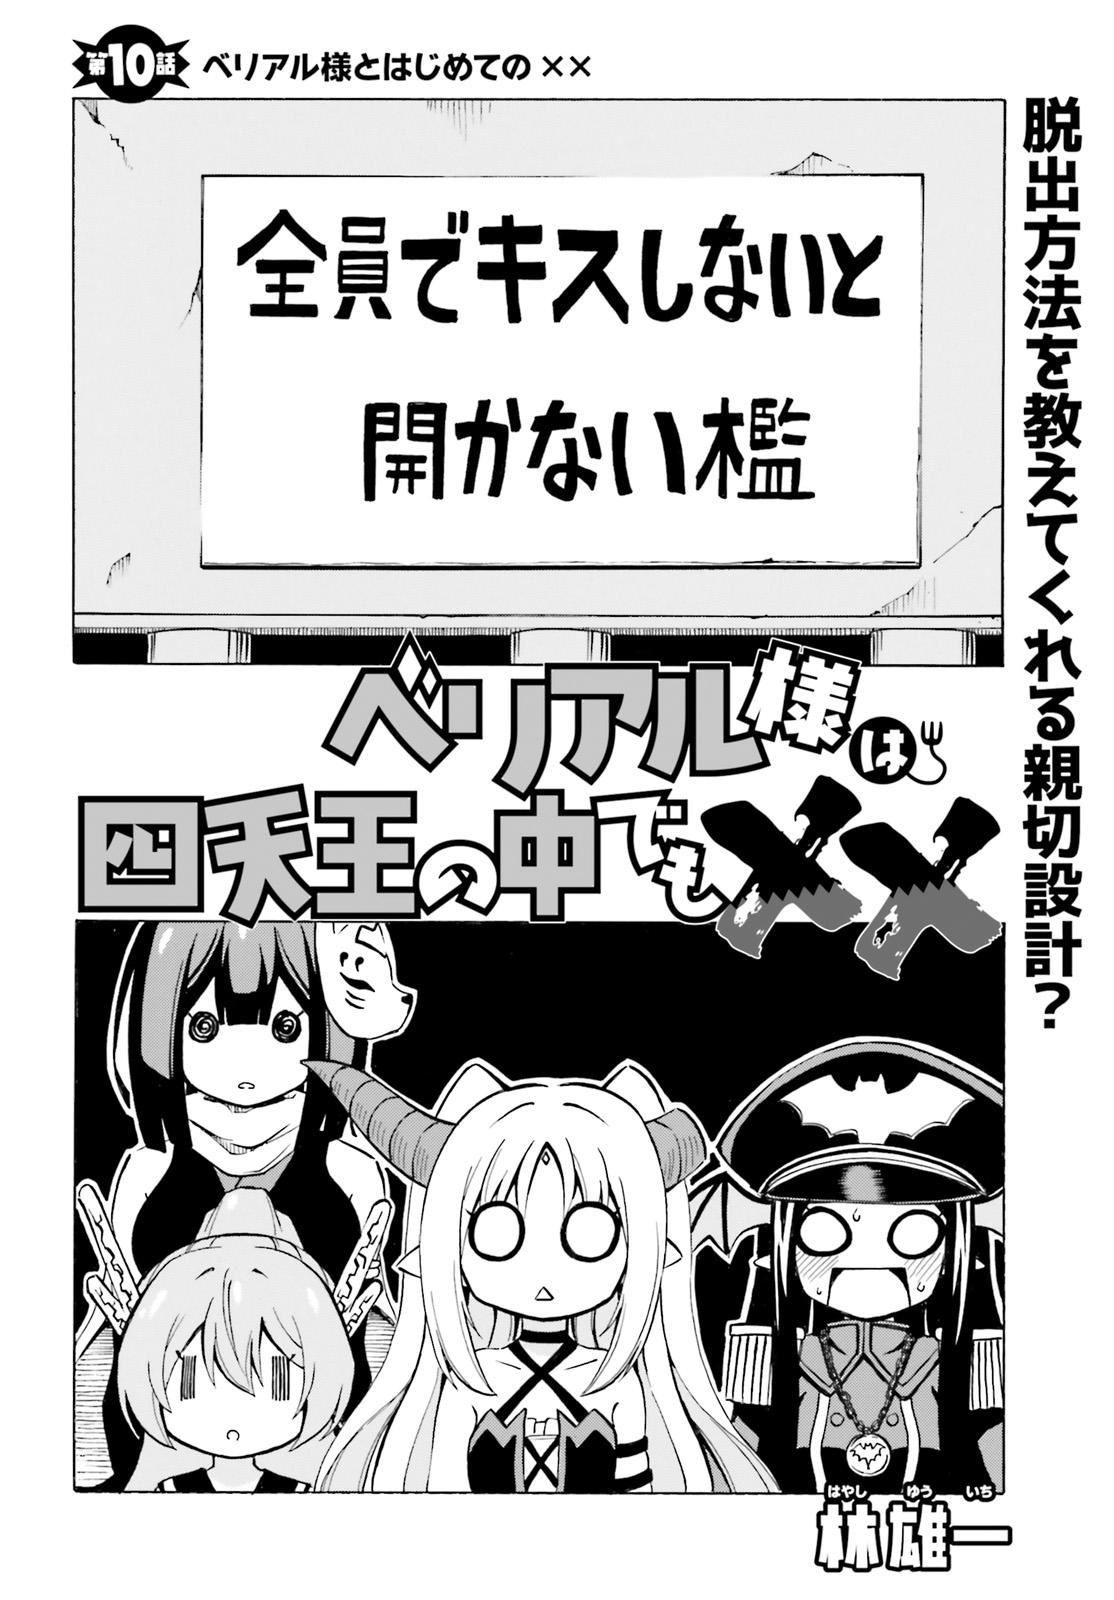 Beriaru-sama wa Shitenno no Naka Demo × × - Chapter 10 - Page 2